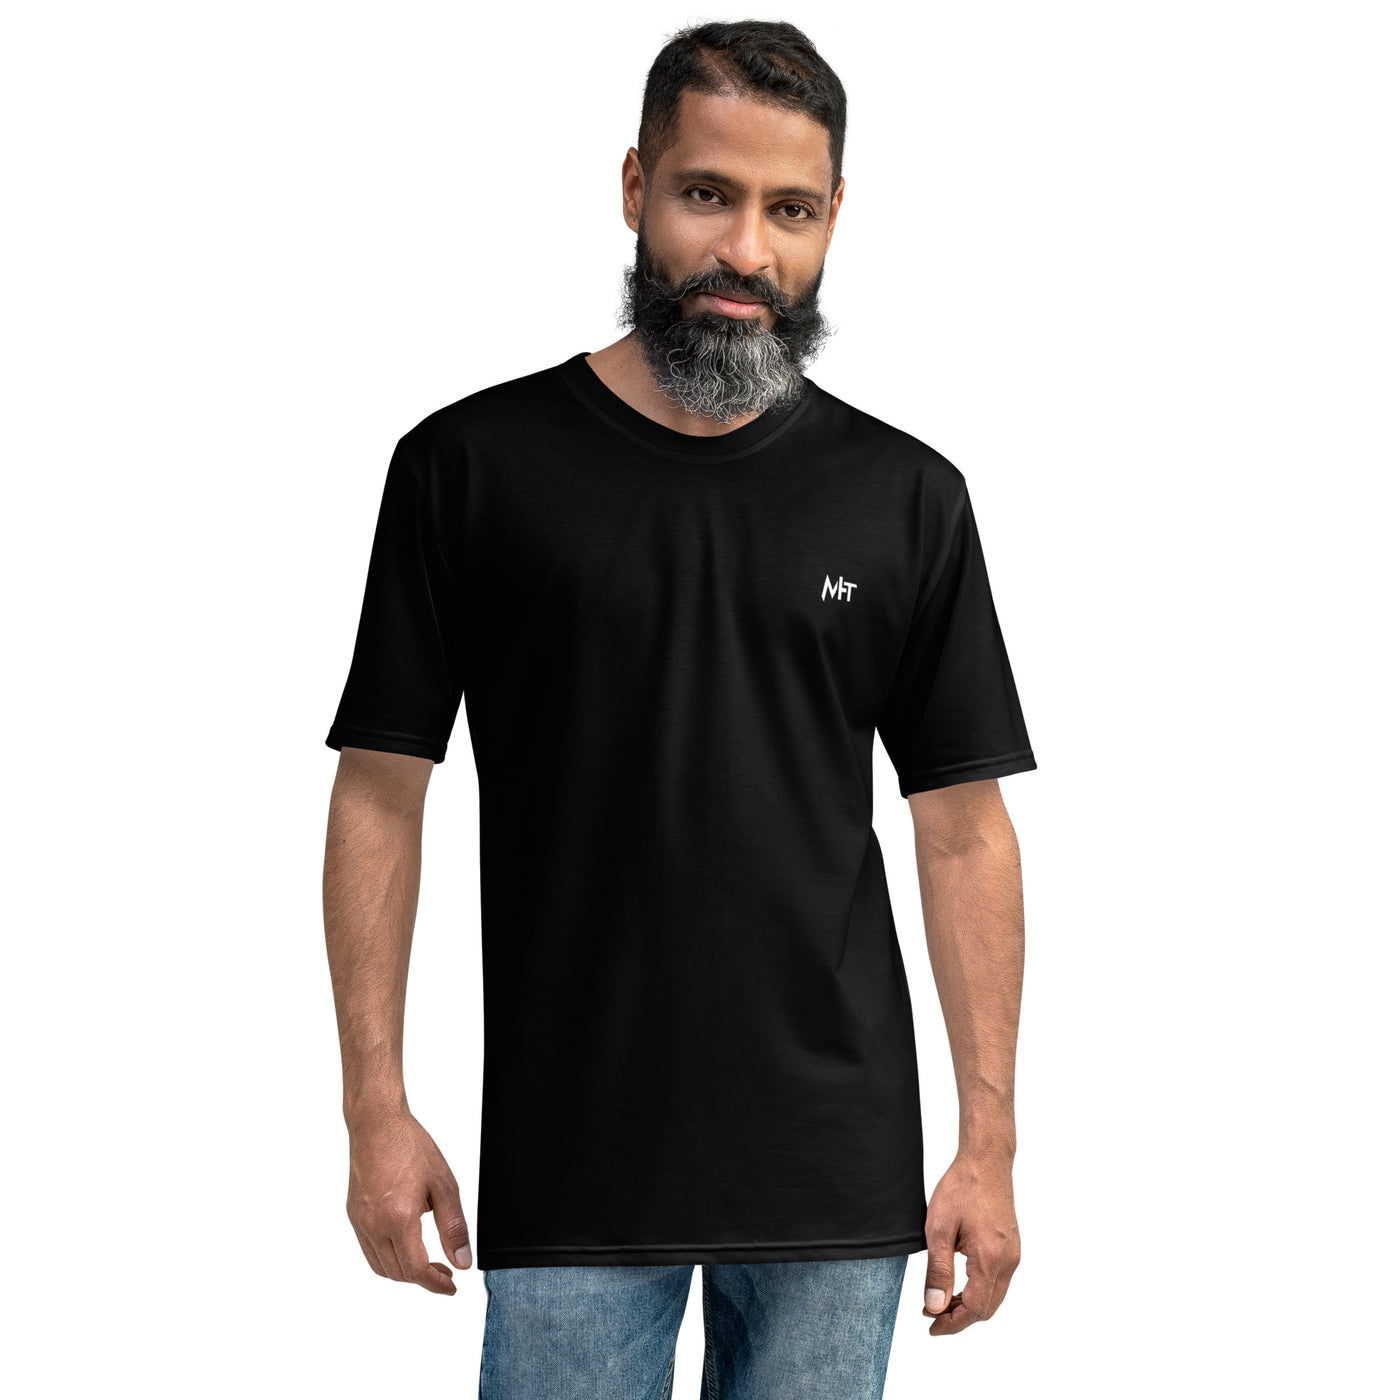 Cyberware assassin v61 - Men's t-shirt